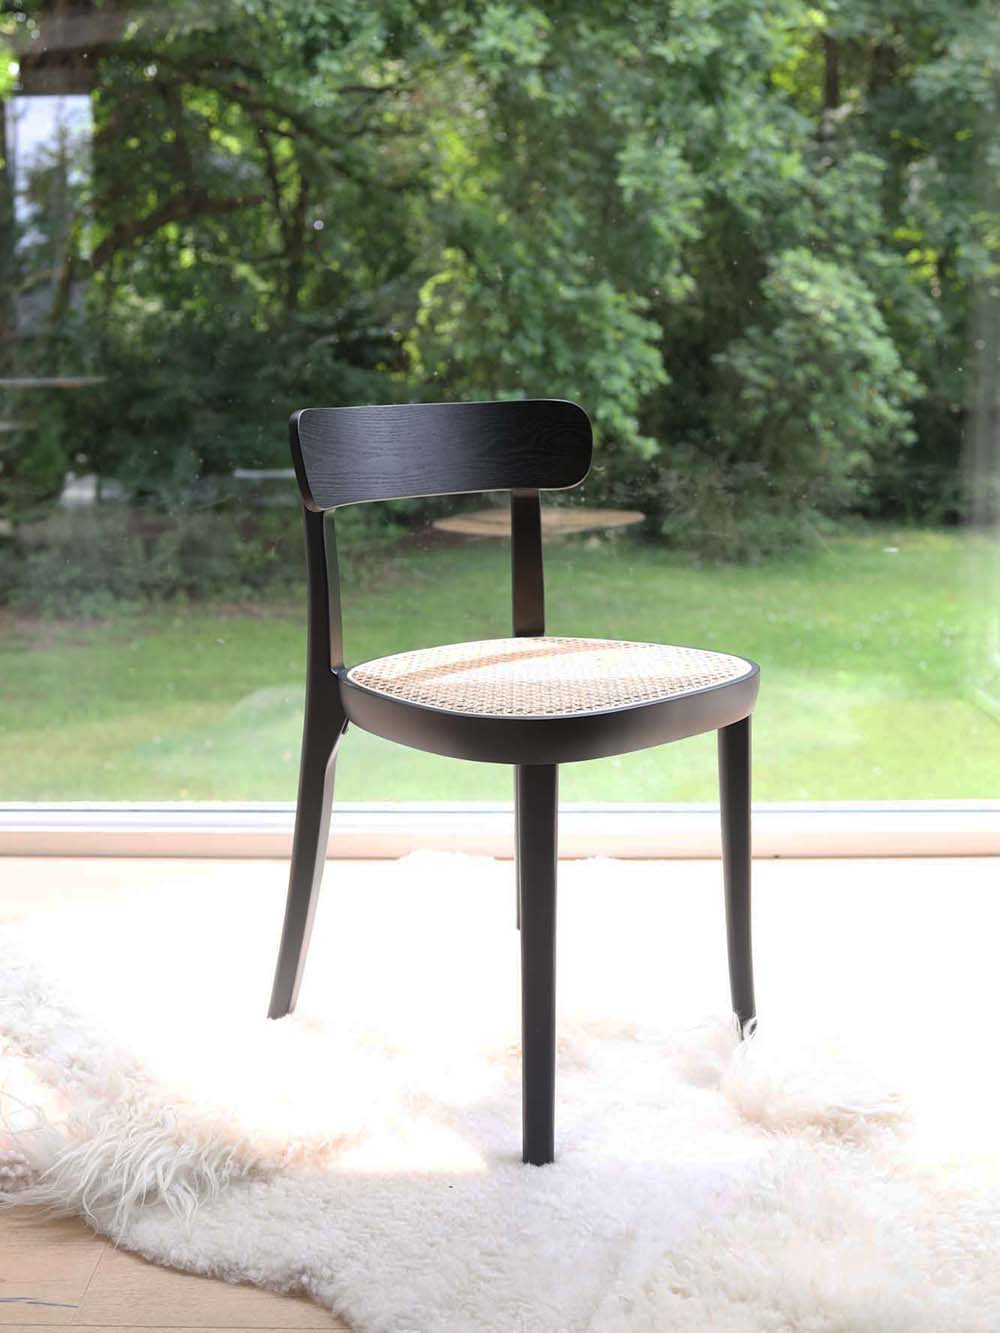 Ontdek Camille! Met een charmant rotan zitvlak en een prachtig houten frame brengt deze stoel een harmonieuze sfeer in elke ruimte. De Camille Chair straalt elegantie uit en voegt een vleugje zachtheid toe aan je interieur.